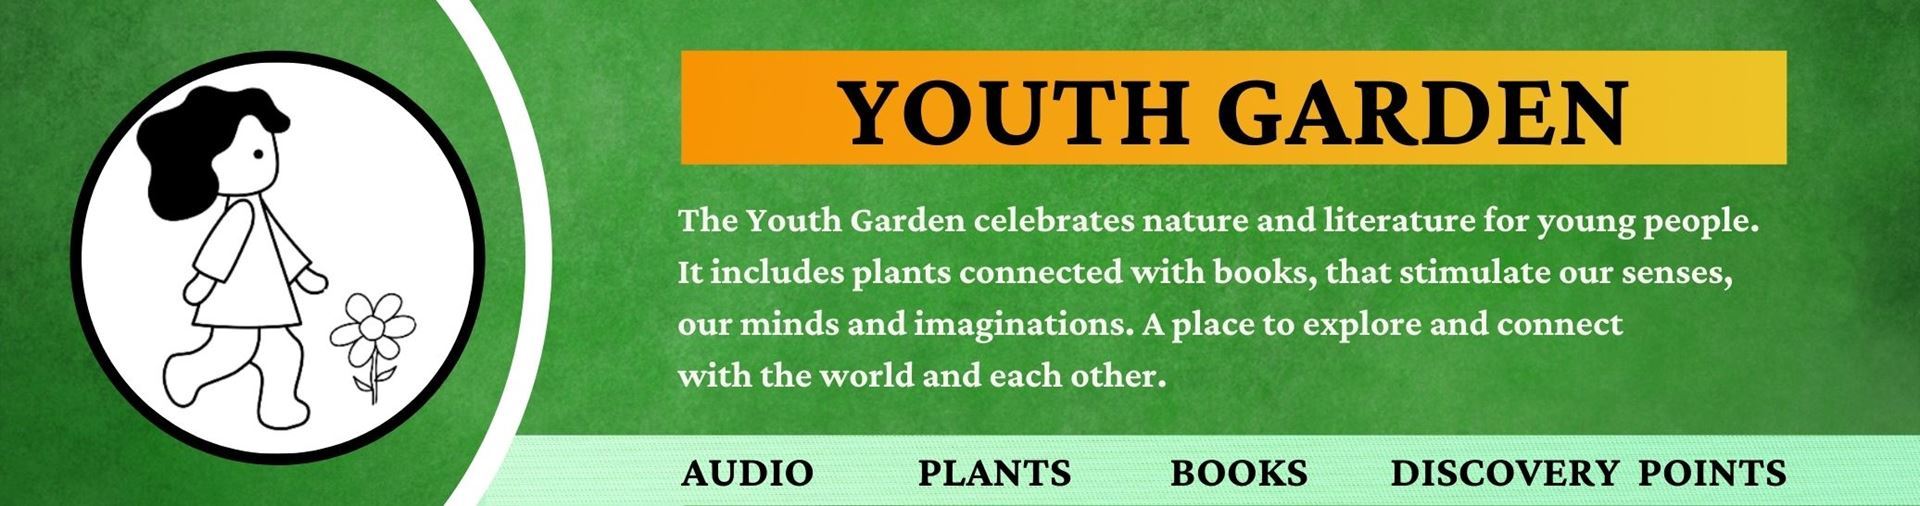 Youth Garden